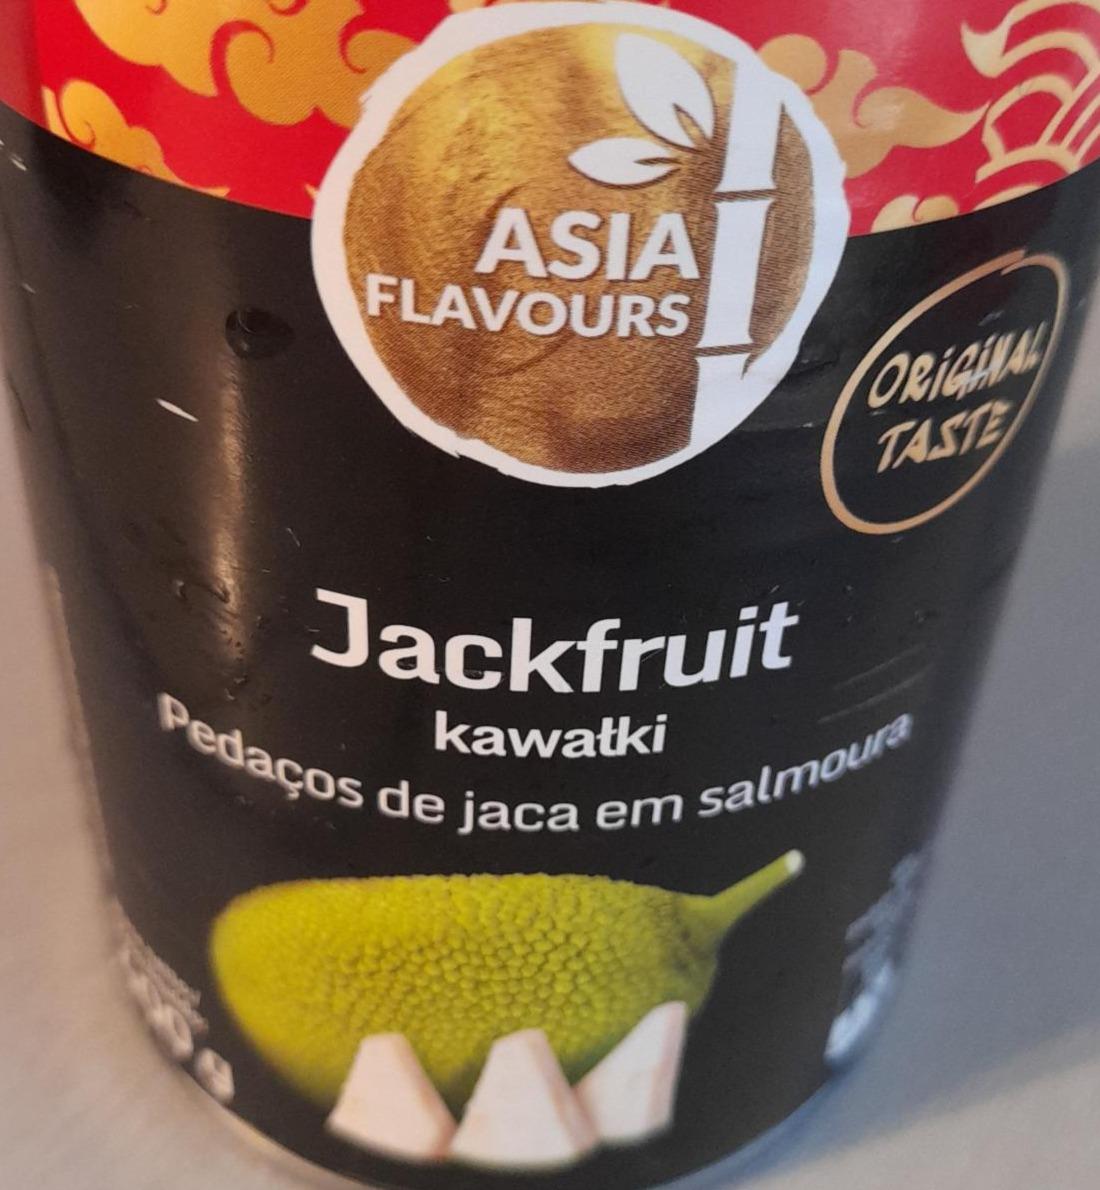 Фото - джекфрут консервированный Asia Flavours